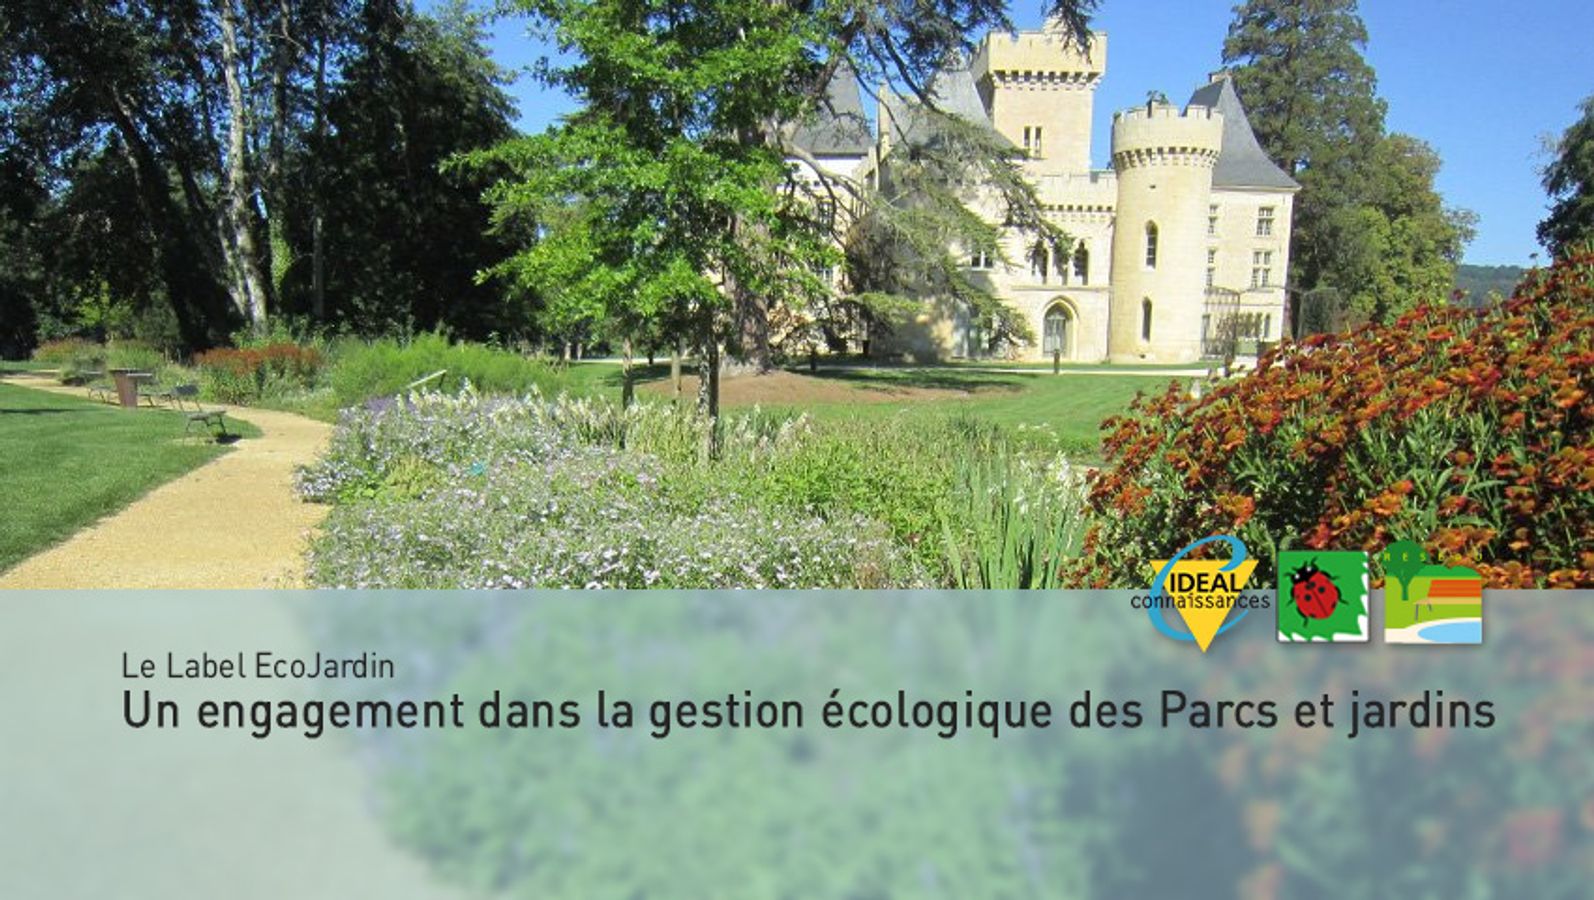 Le Label EcoJardin : Un engagement dans la gestion écologique des Parcs et jardins